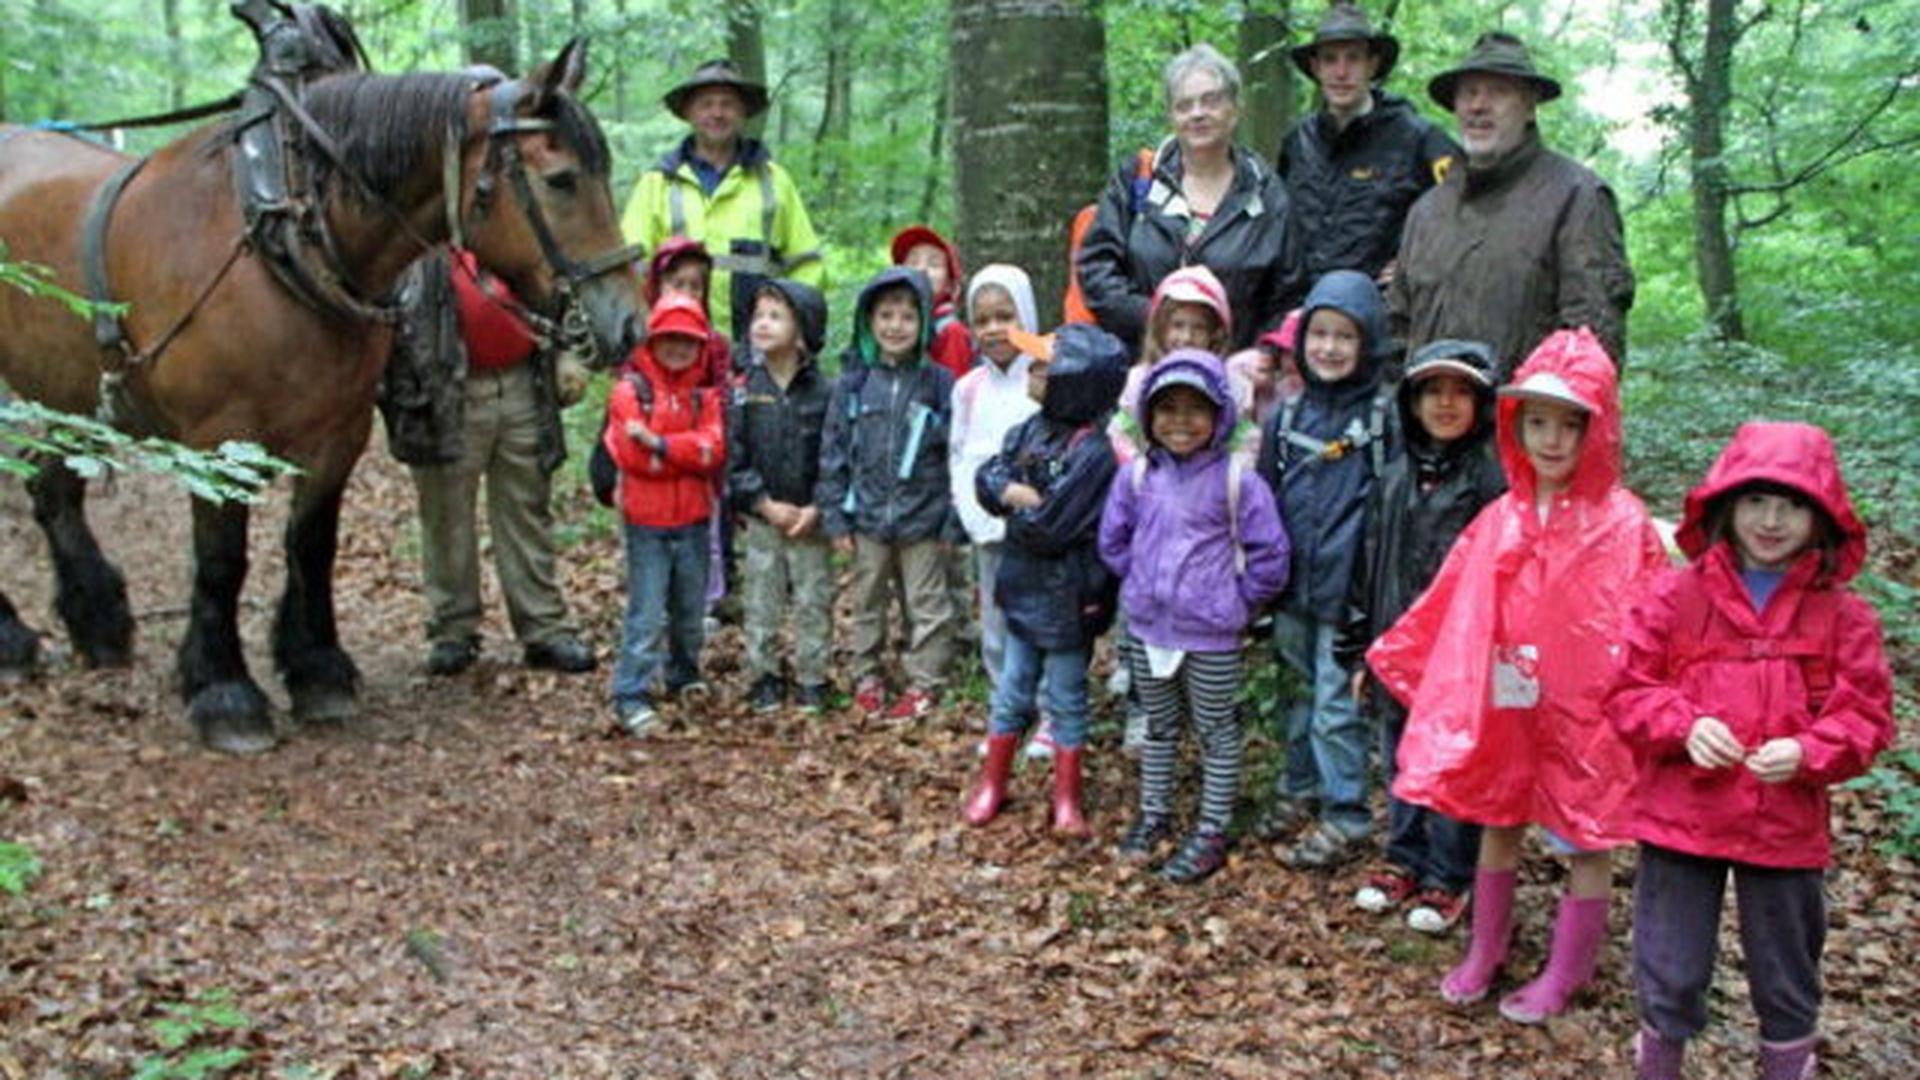 Malgré la pluie, les enfants étaient enthousiastes. La matinée de découverte a rempli son pari: faire connaître aux enfants les trésors de la nature.